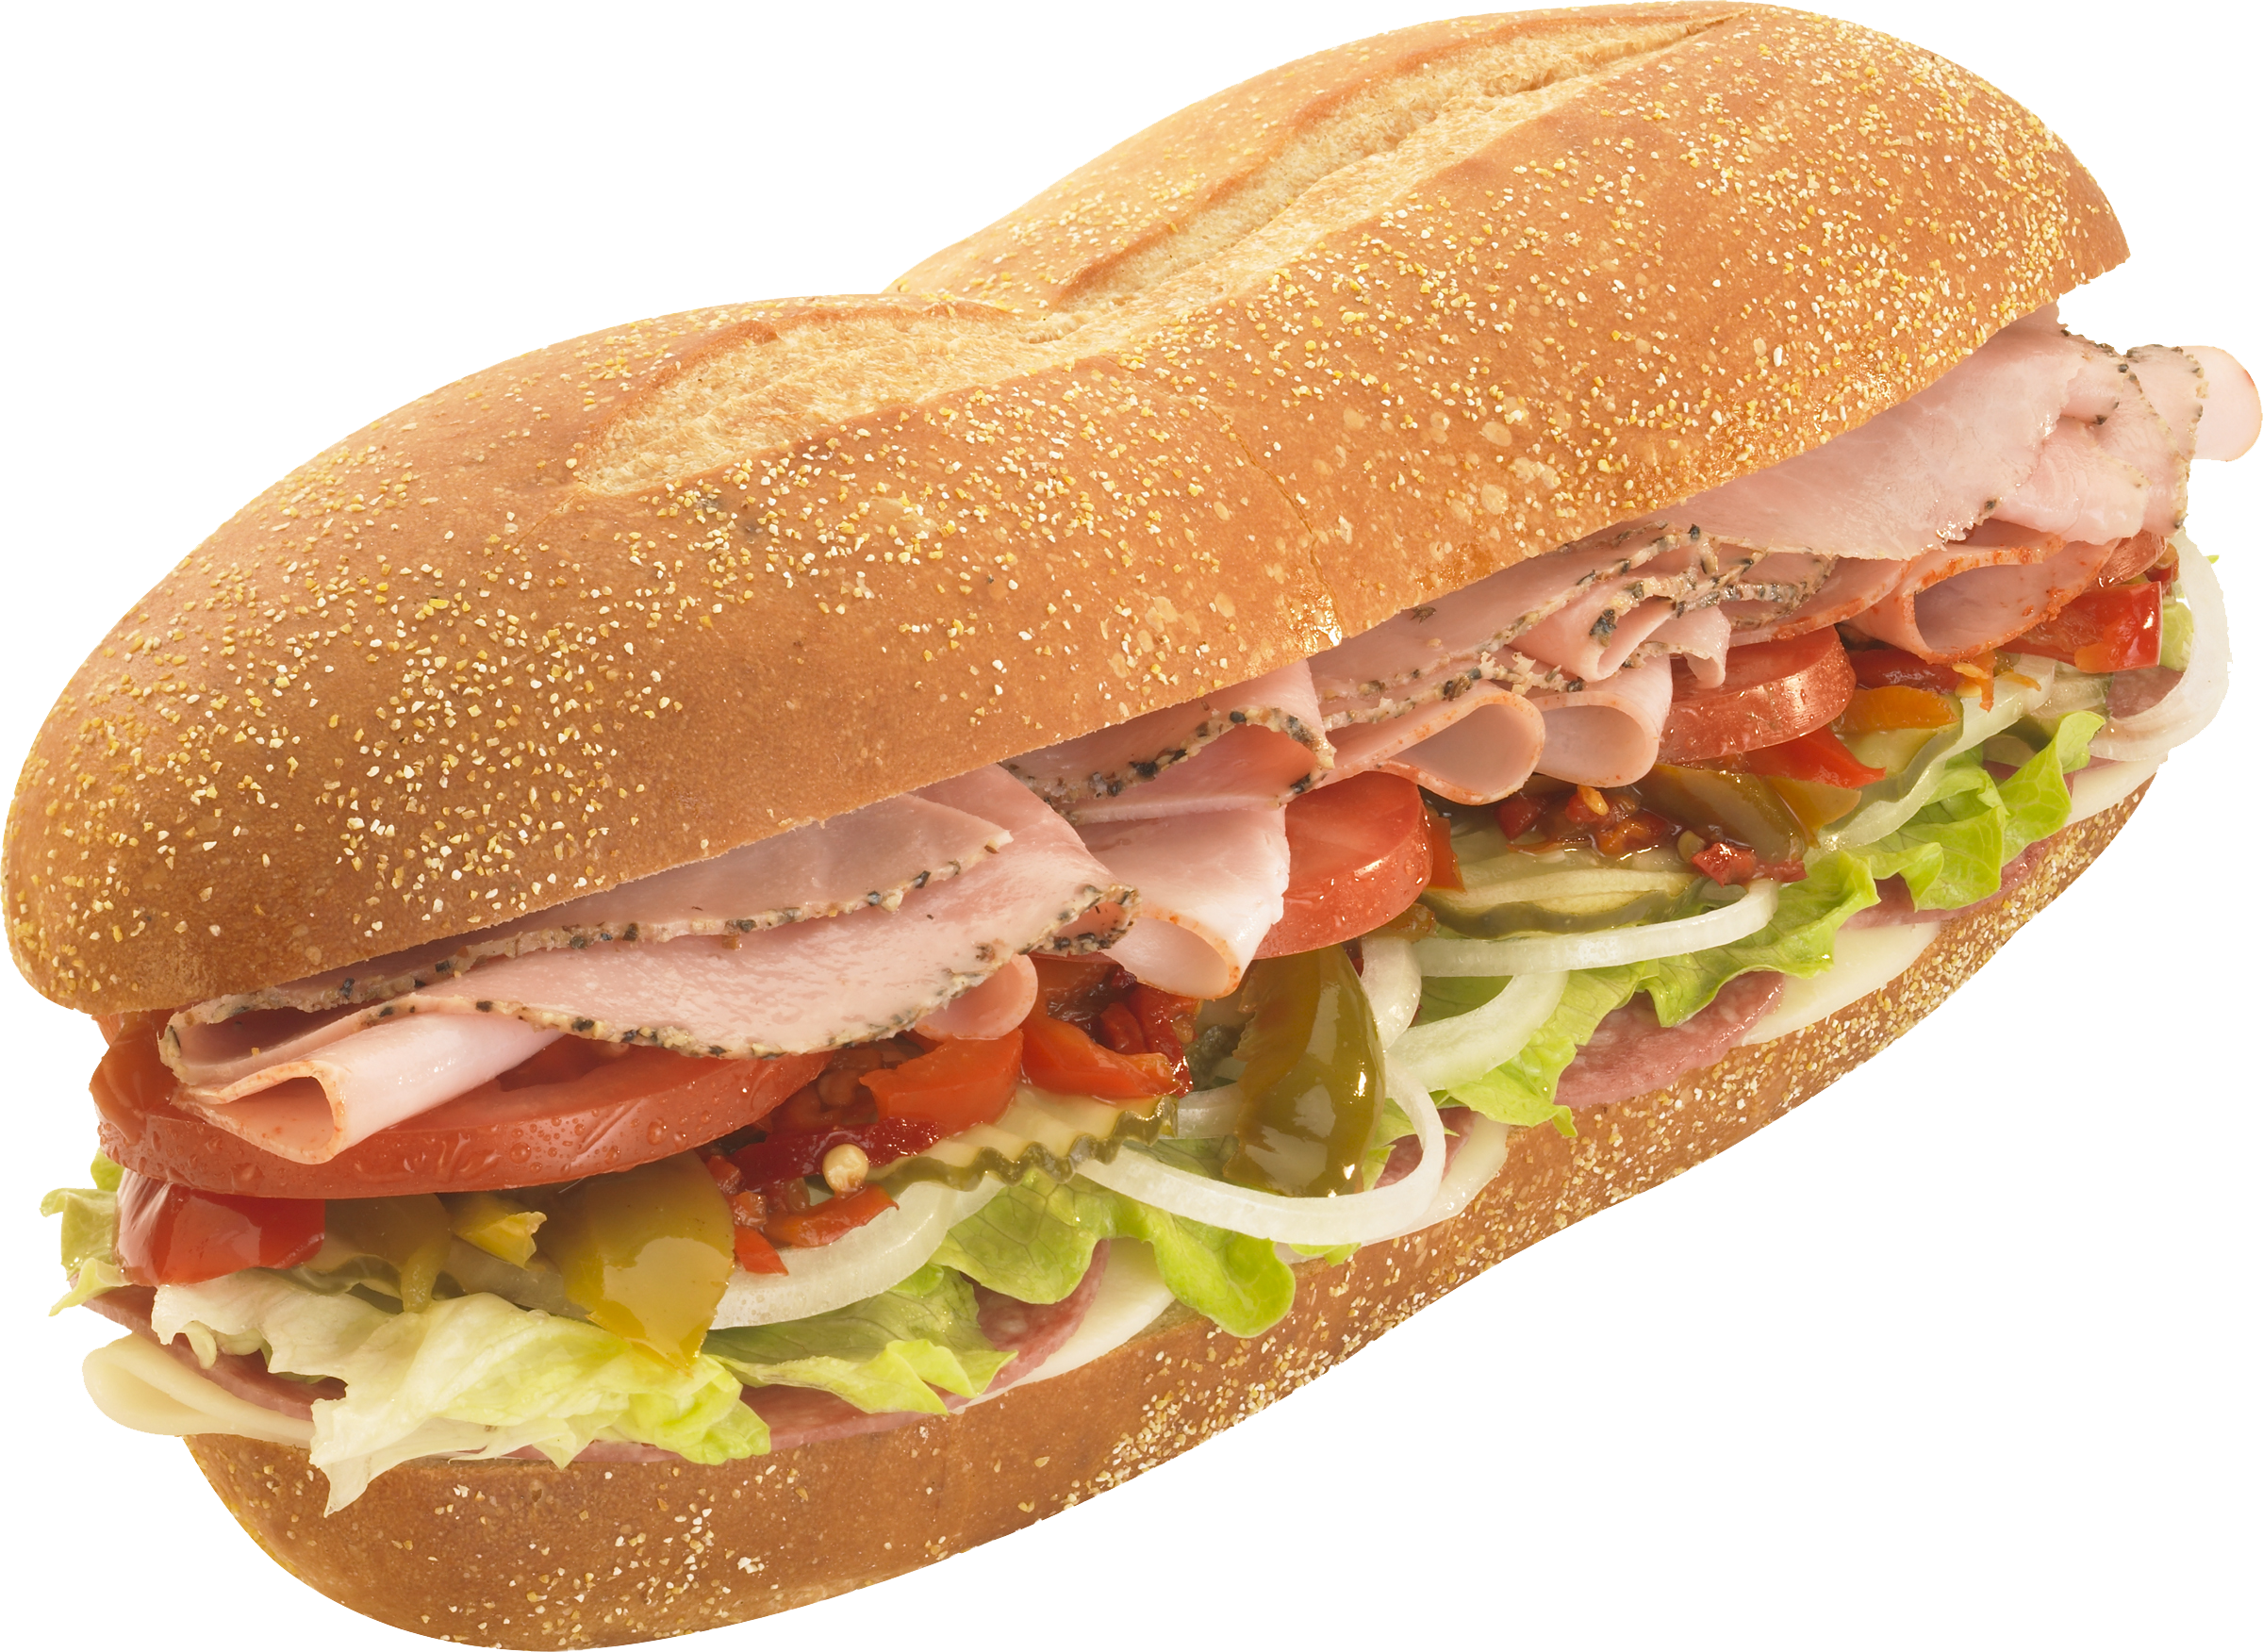 Sandwich PNG